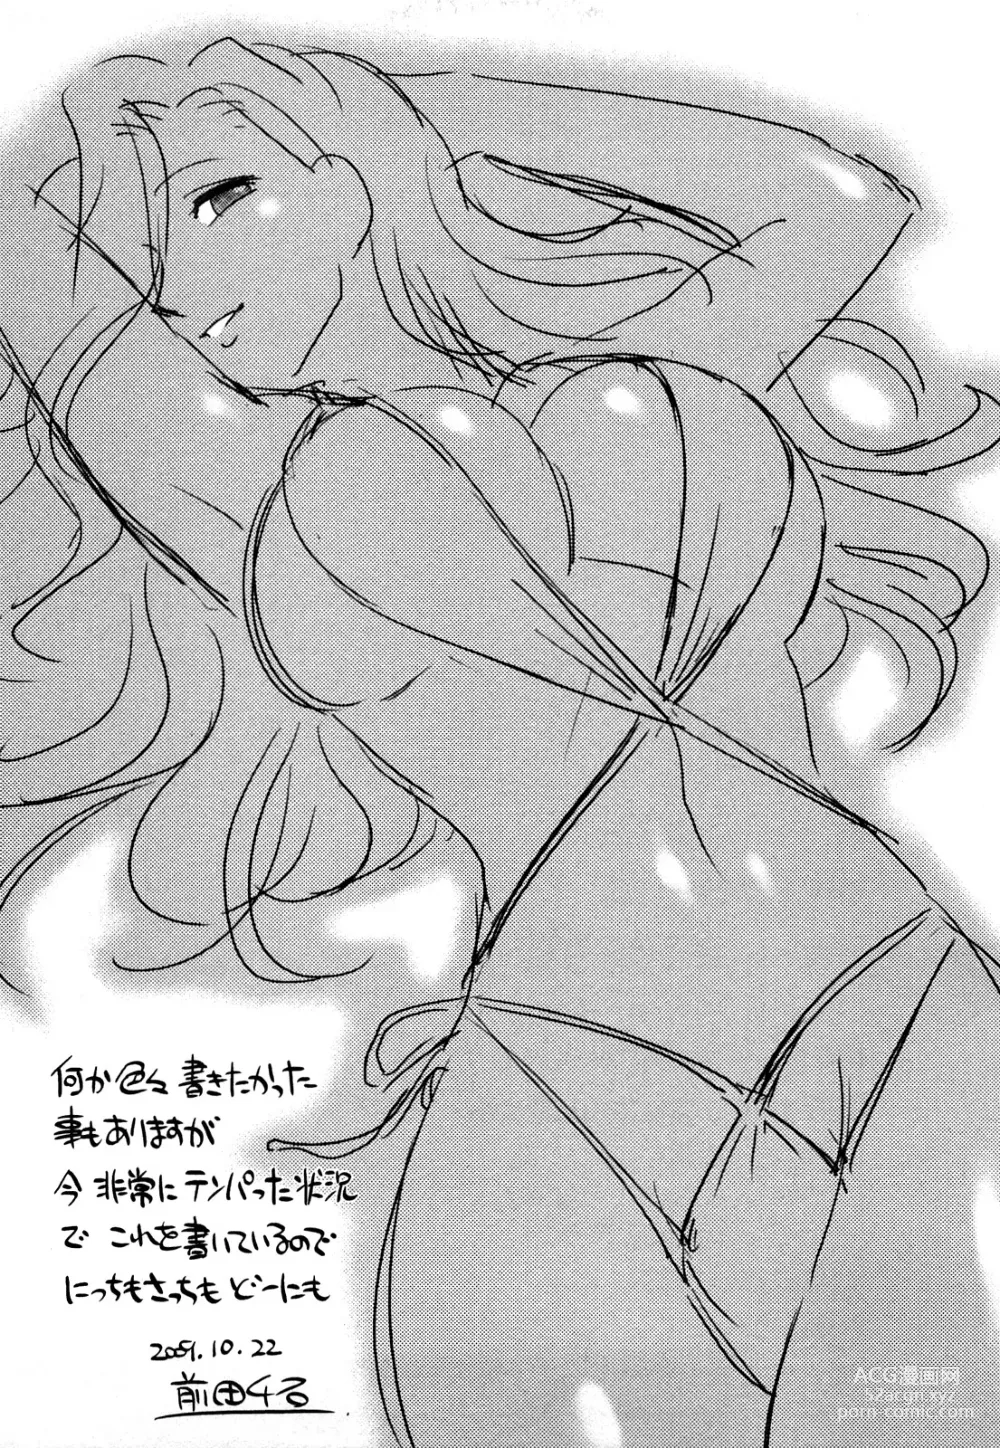 Page 193 of manga Megamisou Panic!